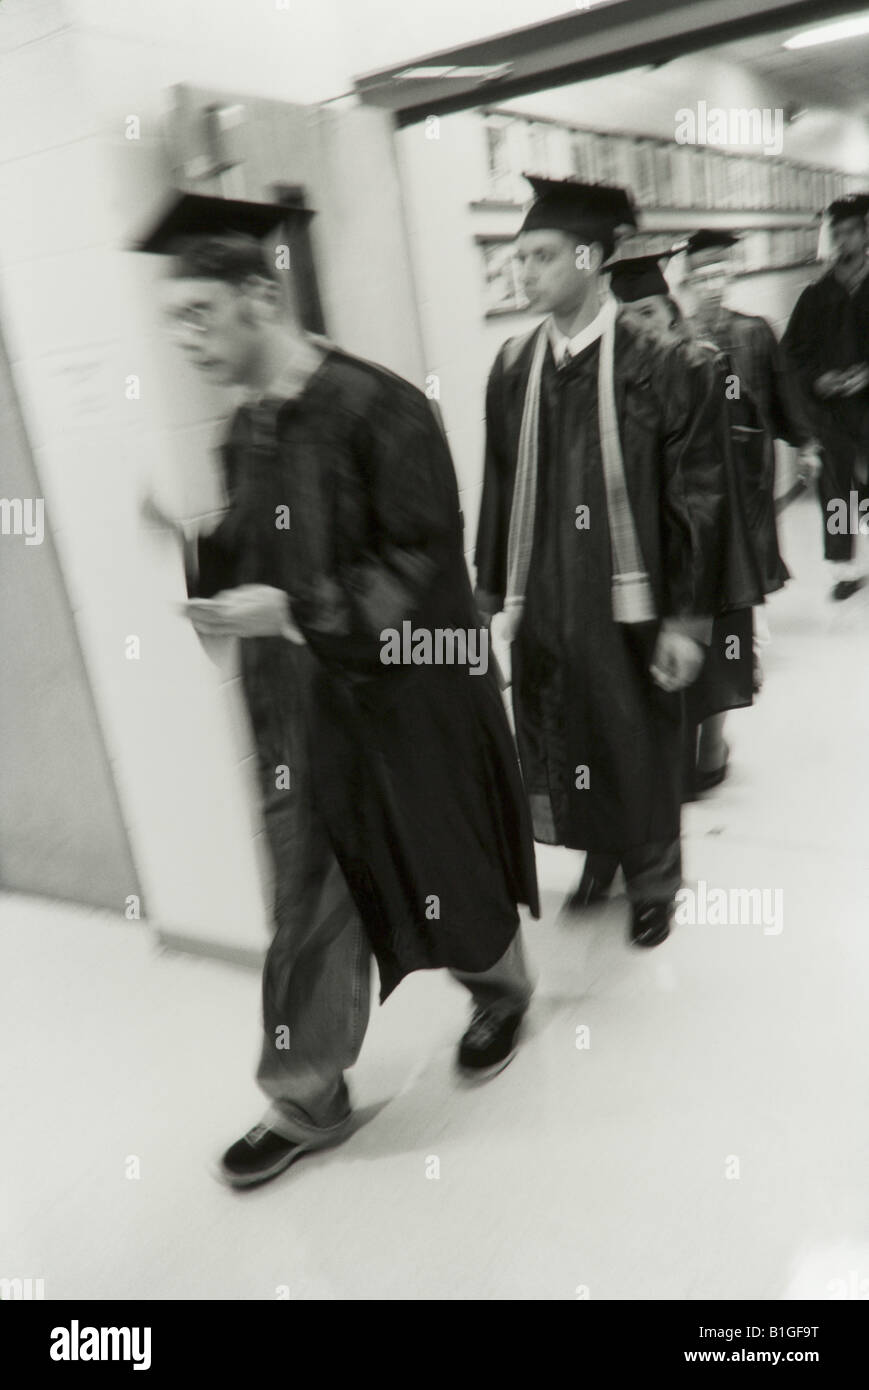 College-Absolventen an der Abschlussfeier, Graduierung Roben tragen, erhalten Diplome, B + W Bild Stockfoto